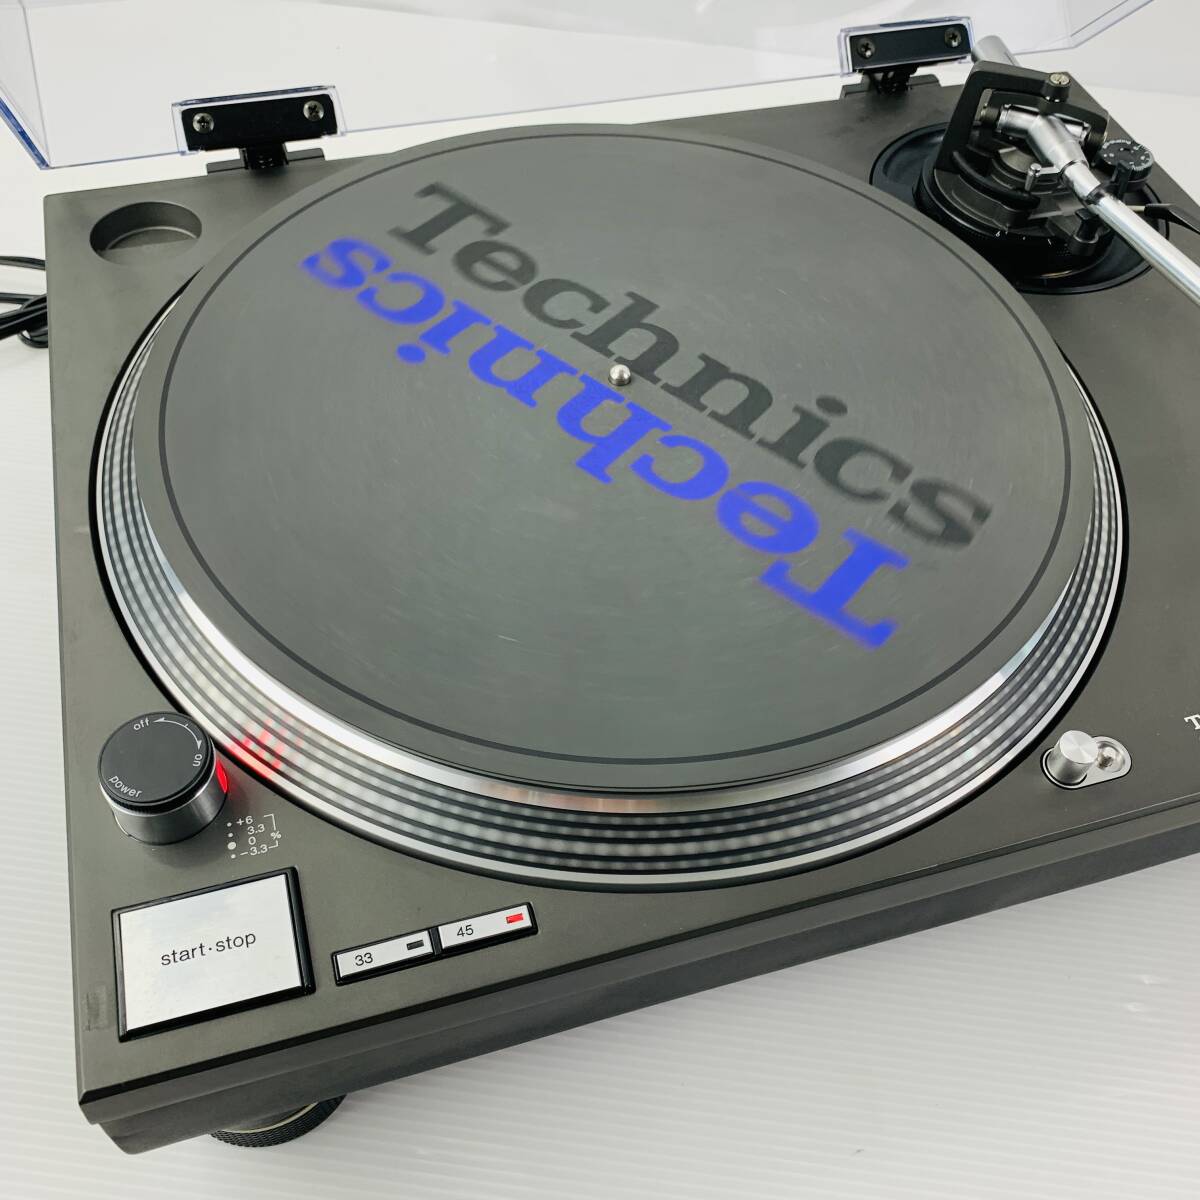 Technics ターンテーブル SL-1200MK3 本体 レコードプレーヤー DJ ミキサー オーディオ機器 テクニクス_画像2